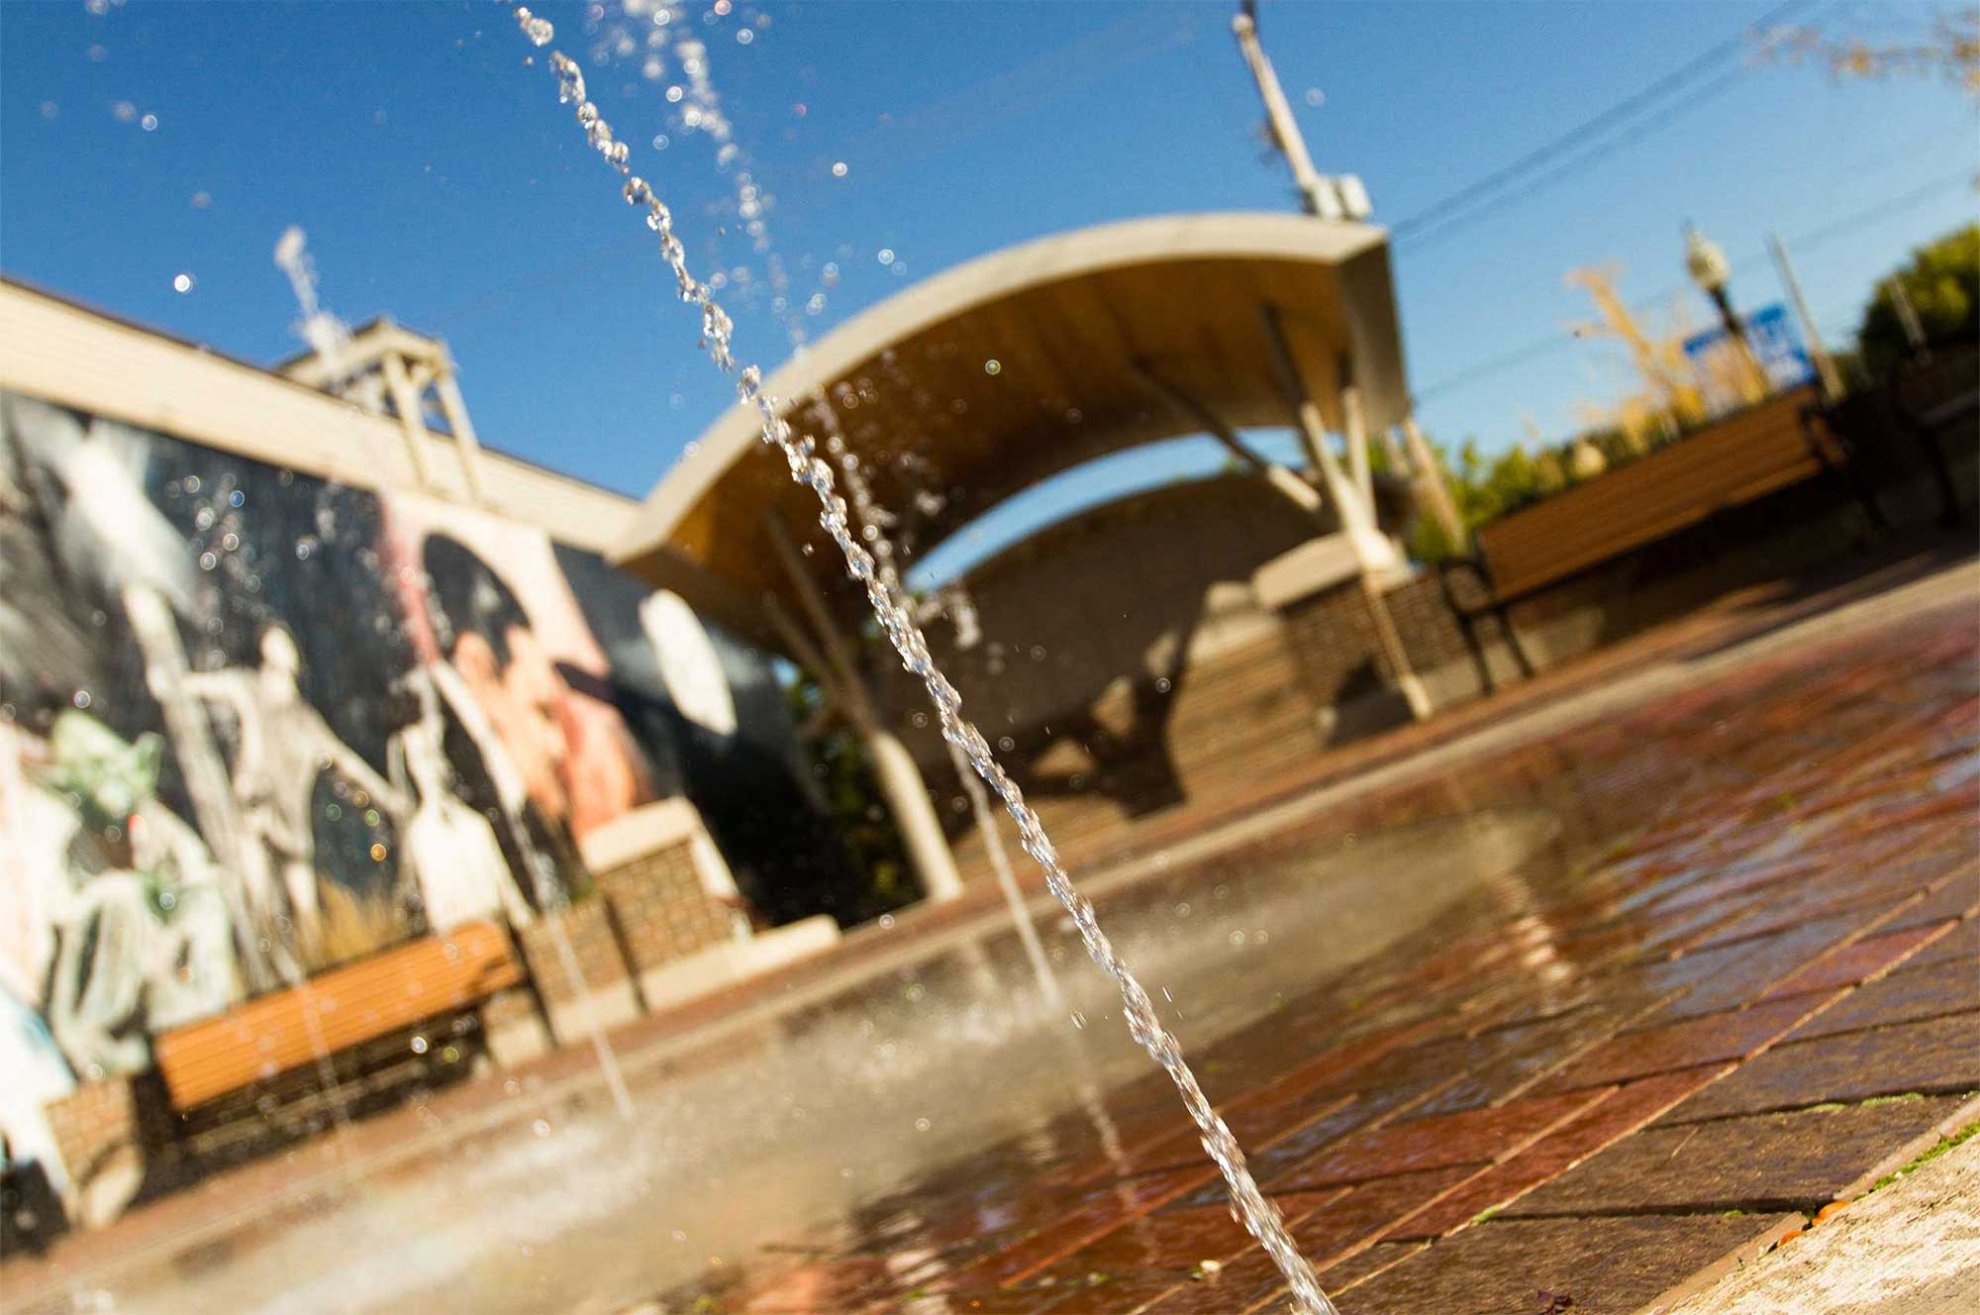 City of Hastings MI Spray Plaza | Splash Park